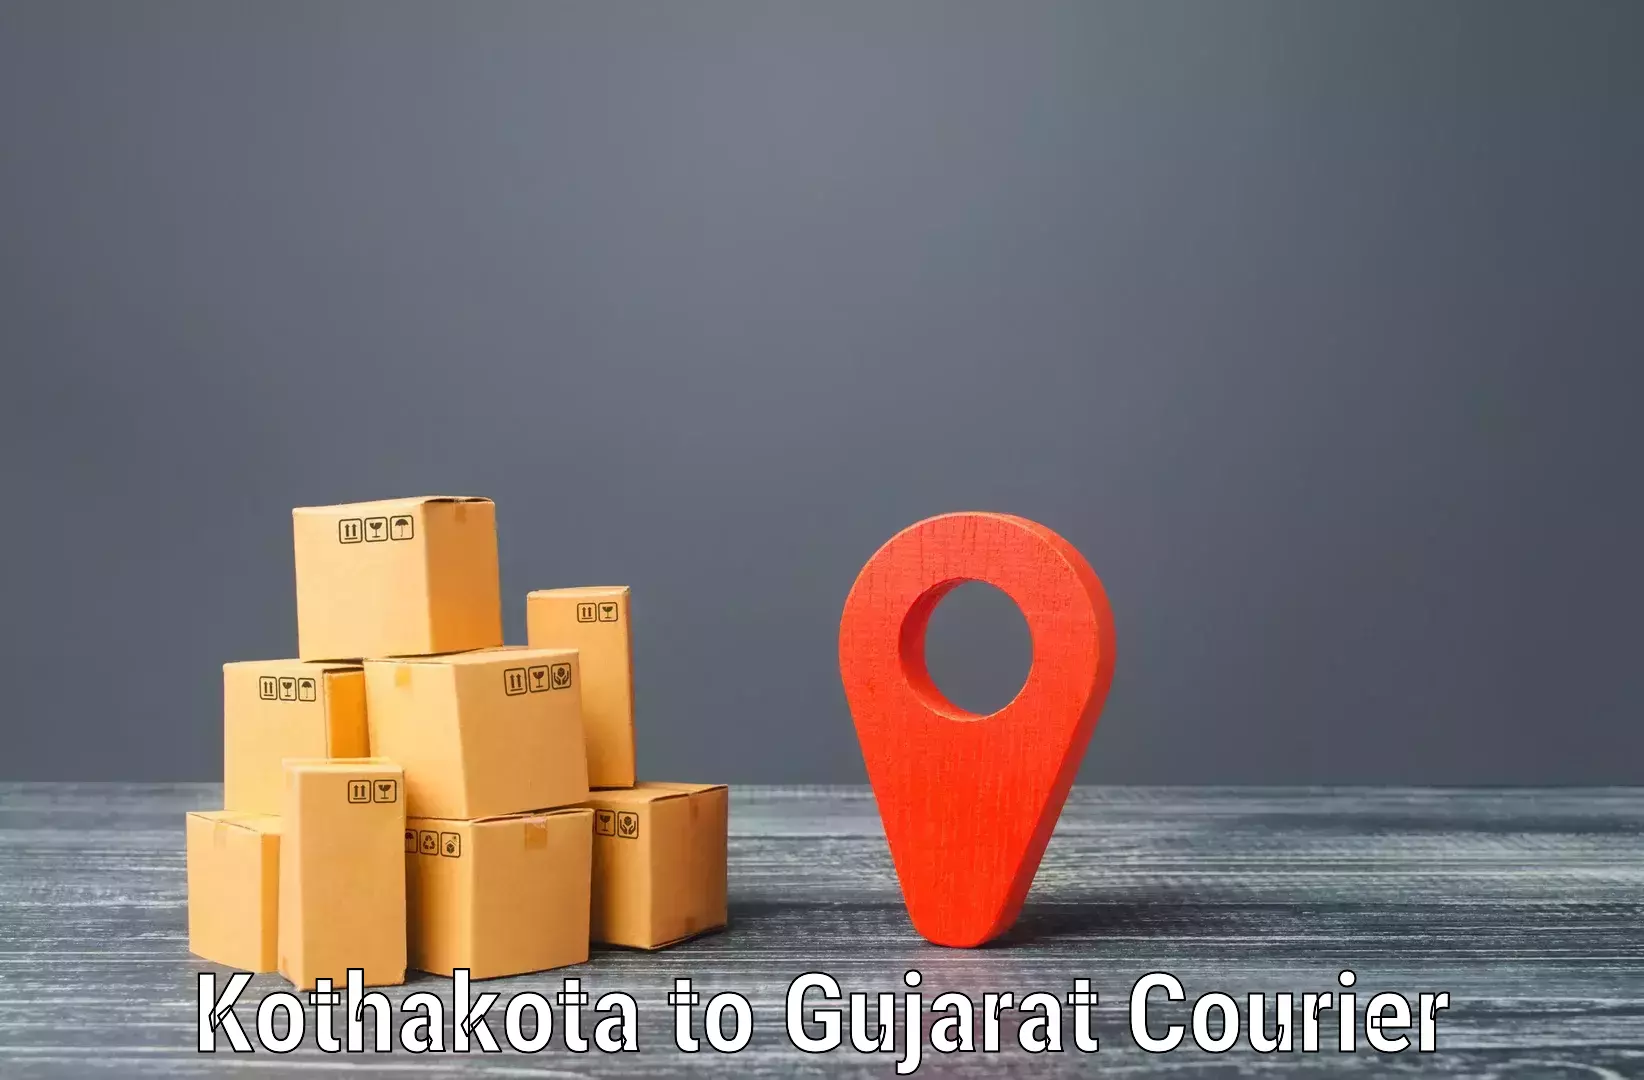 Doorstep delivery service Kothakota to IIIT Surat